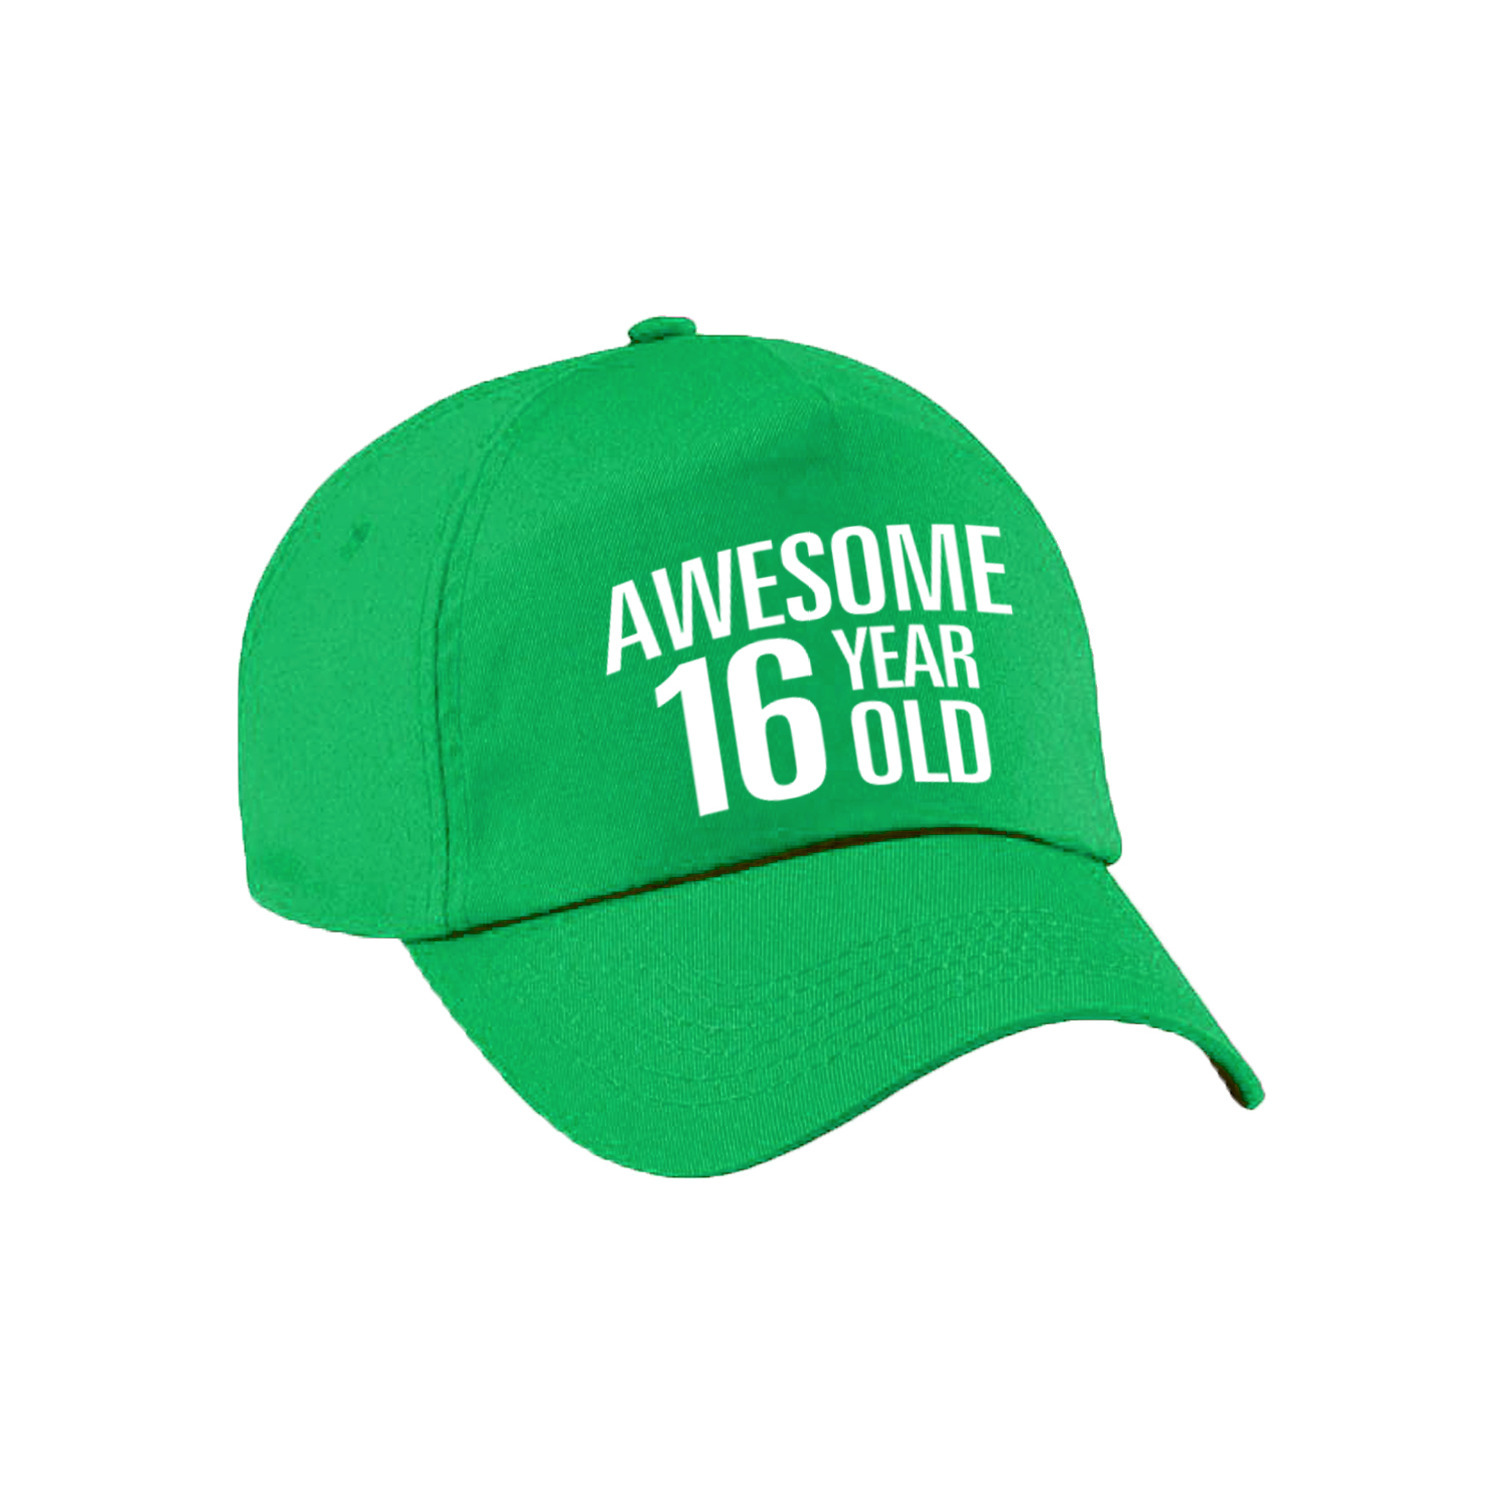 Awesome 16 year old verjaardag pet / cap groen voor dames en heren